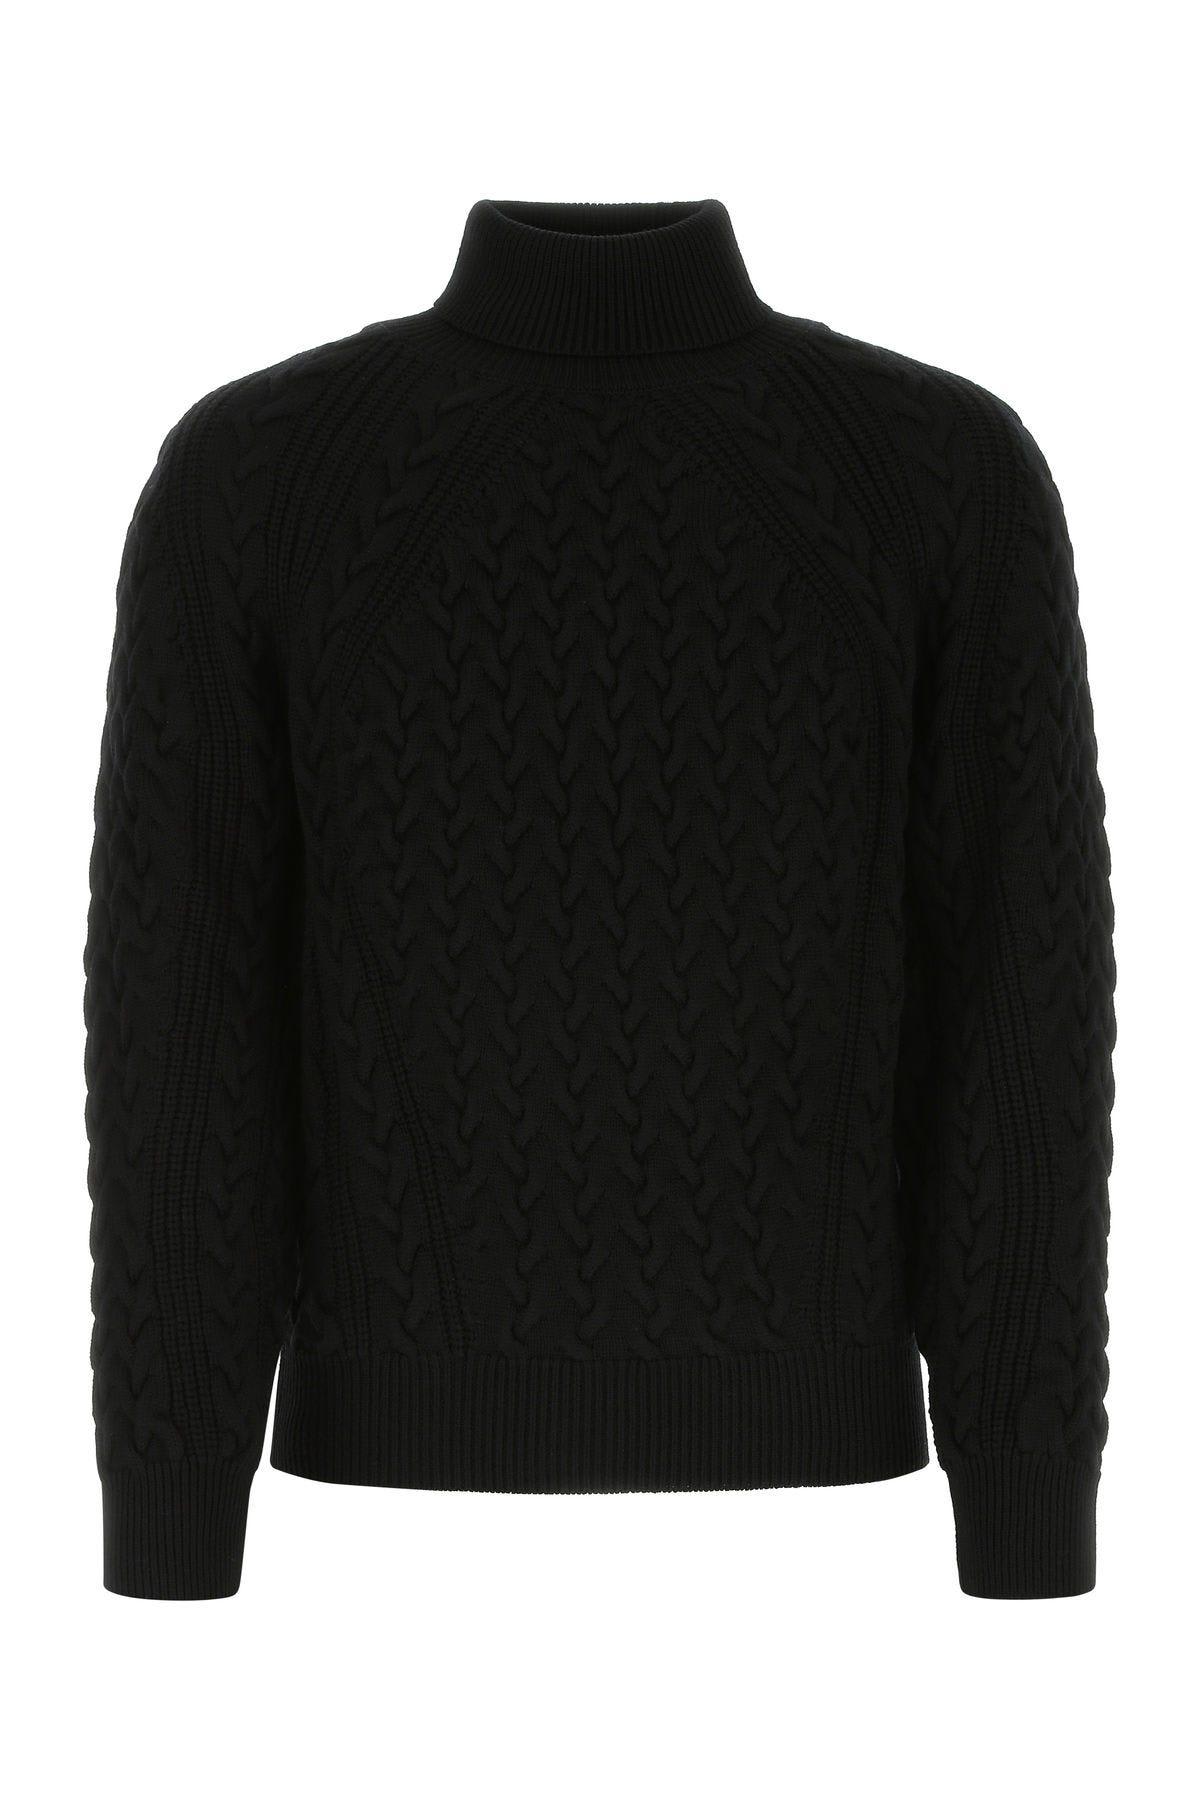 Ermenegildo Zegna Black Wool Sweater